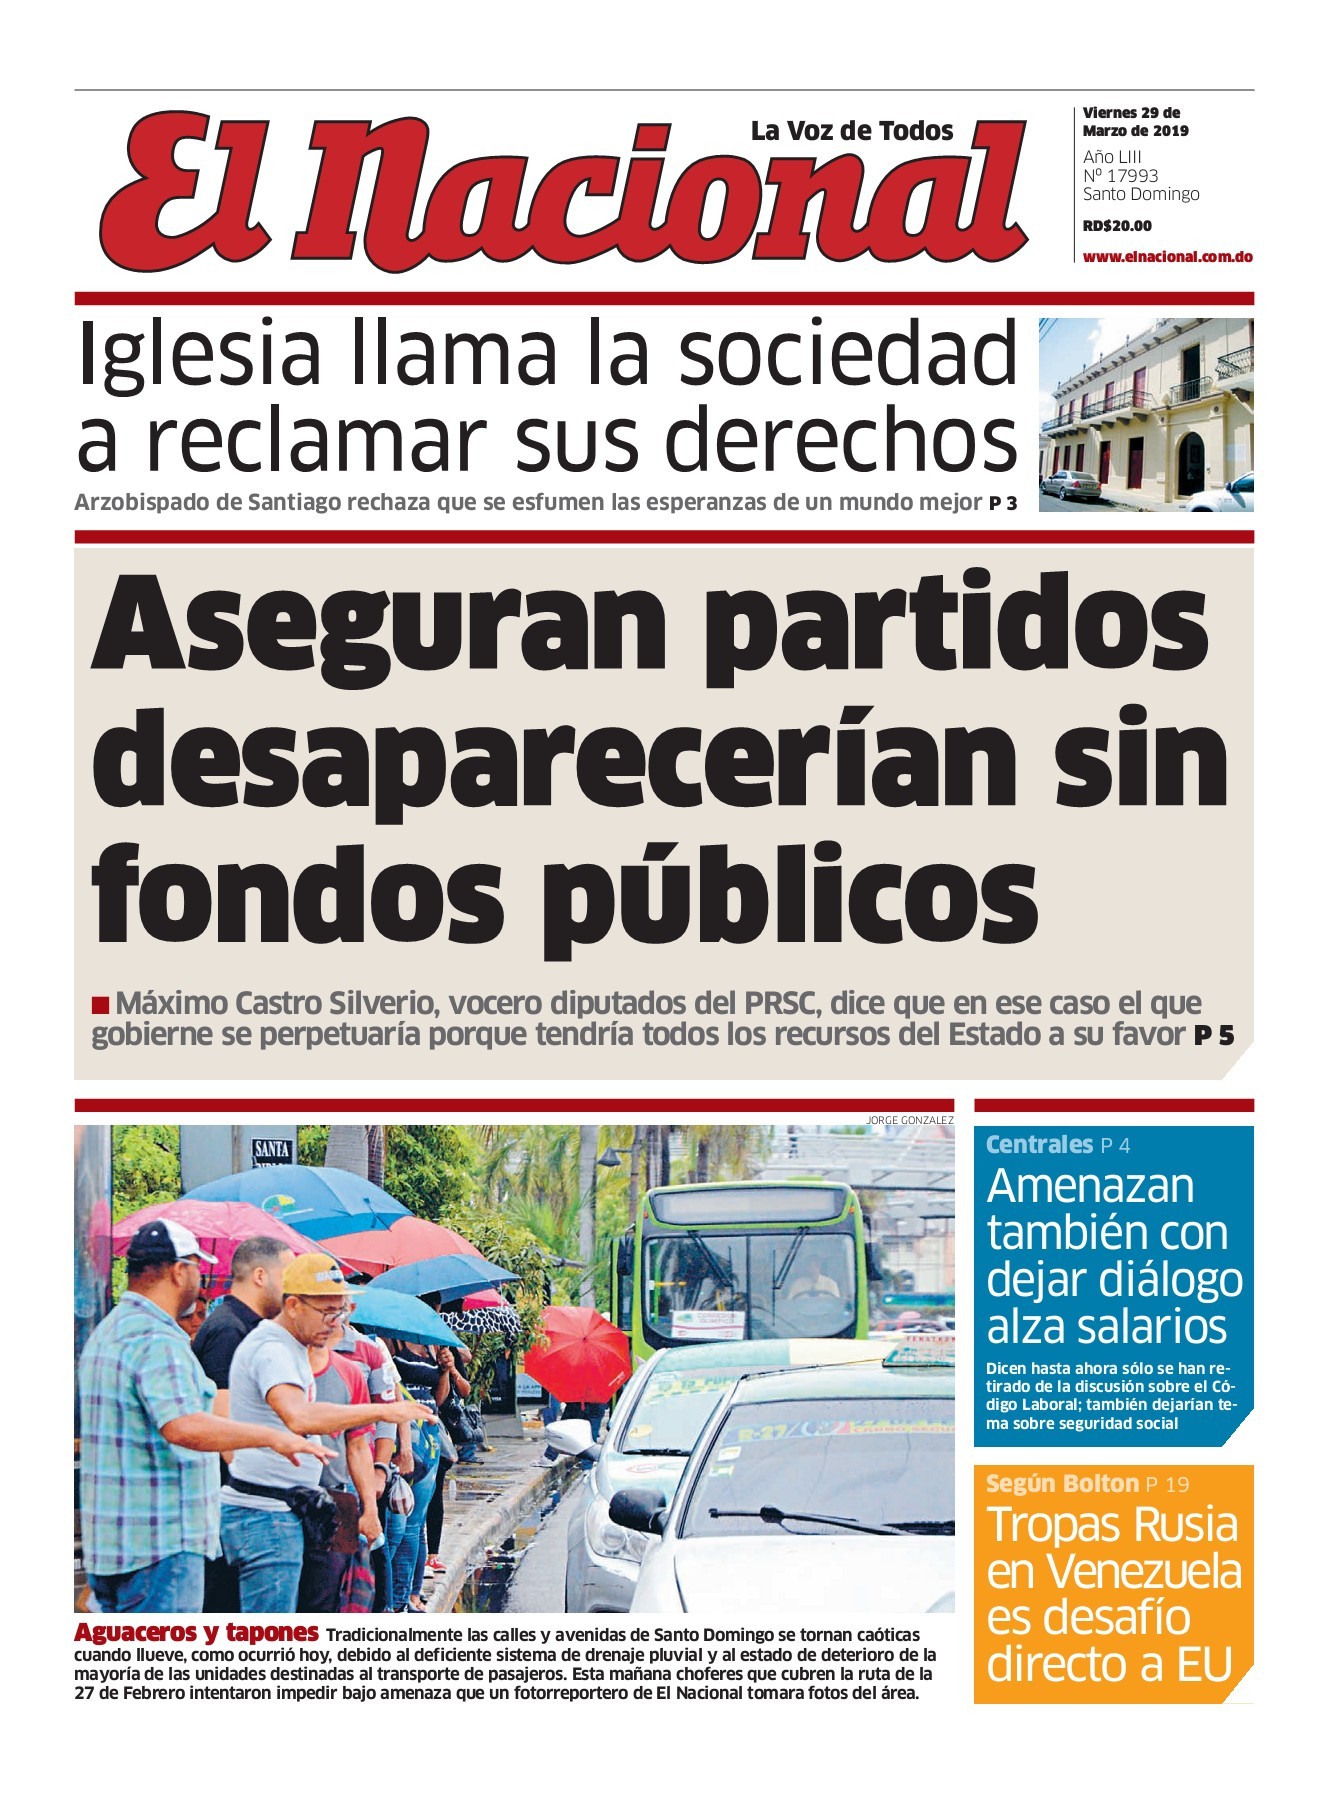 Portada Periódico El Nacional, Viernes 29 de Marzo 2019